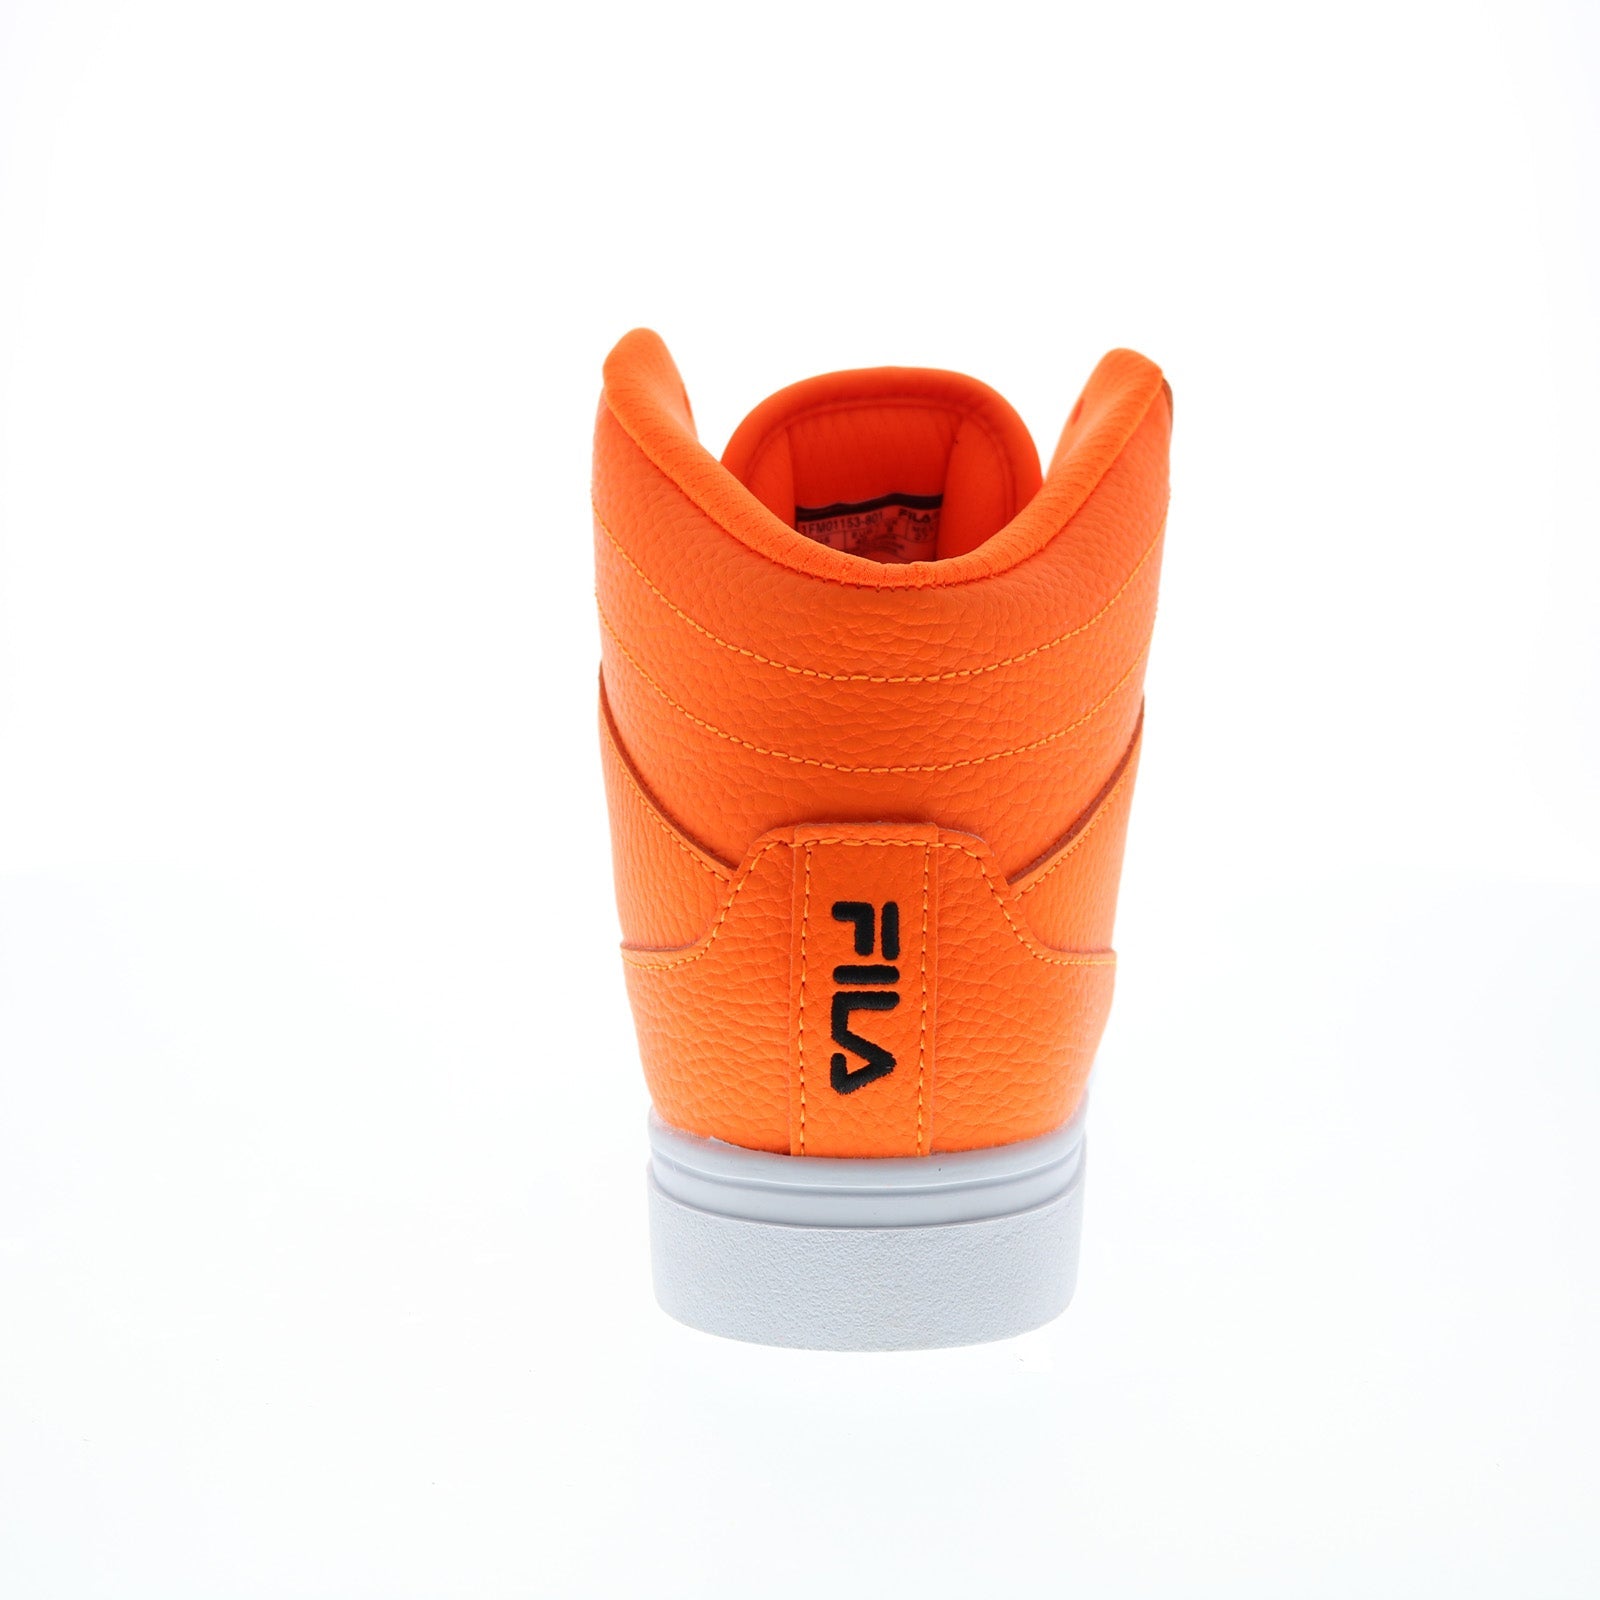 Buy Fila Men's Memory At Peake Composite Toe Work Shoe,  Castlerock/Black/Vibrant Orange, 8.5 at Amazon.in